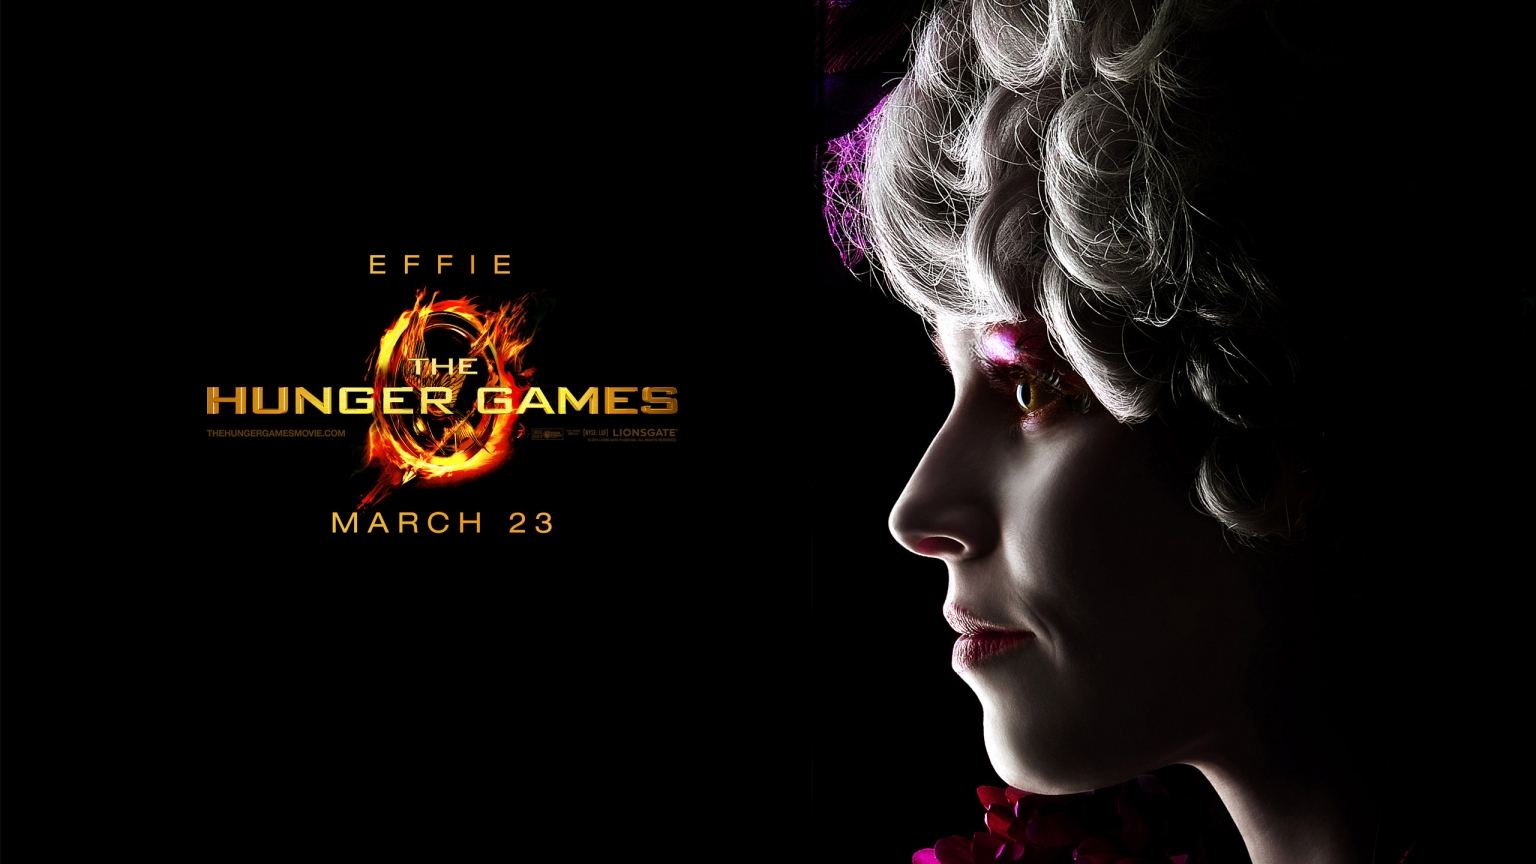 The Hunger Games Effie for 1536 x 864 HDTV resolution